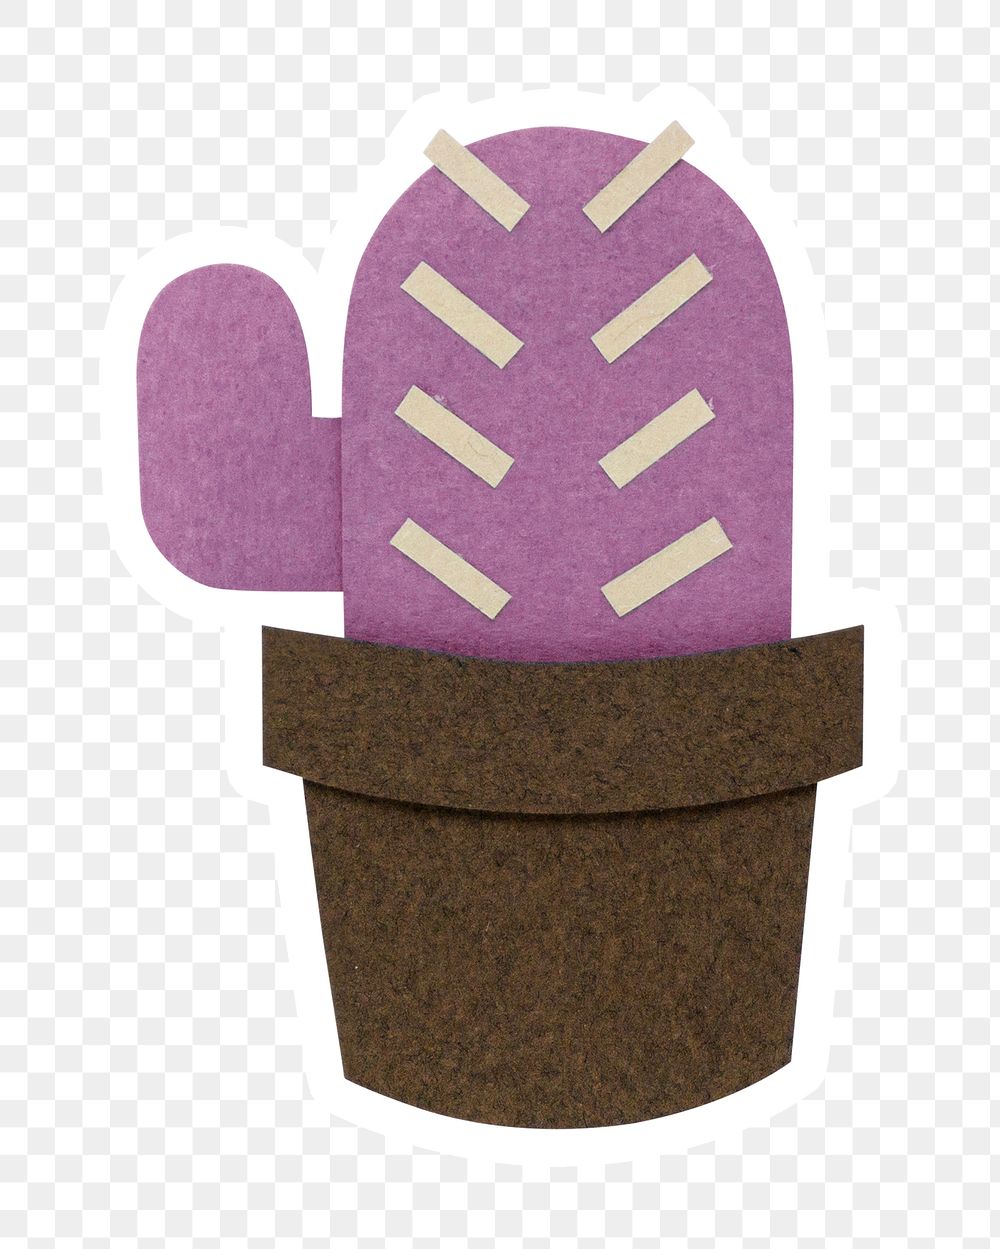 Purple cactus paper craft sticker design element